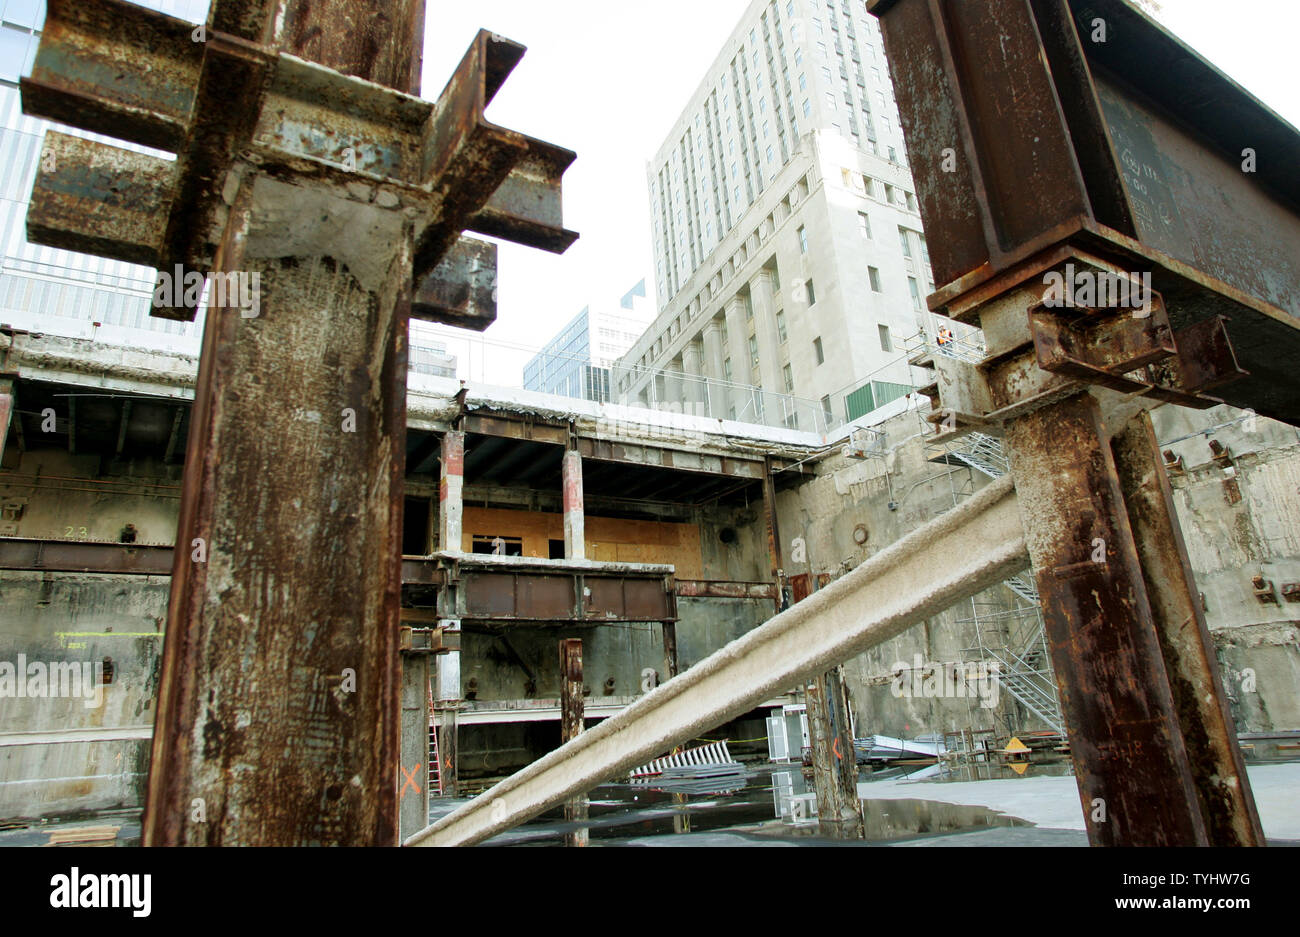 Freiliegenden Stahlträger sind um das World Trade Center Site, wie der Bau der 1.776 Meter hohe Freedom Tower des World Trade Center Site beginnt in New York City am 19. Dezember 2006 aufgestellt. (UPI Foto/Monika Graff) Stockfoto